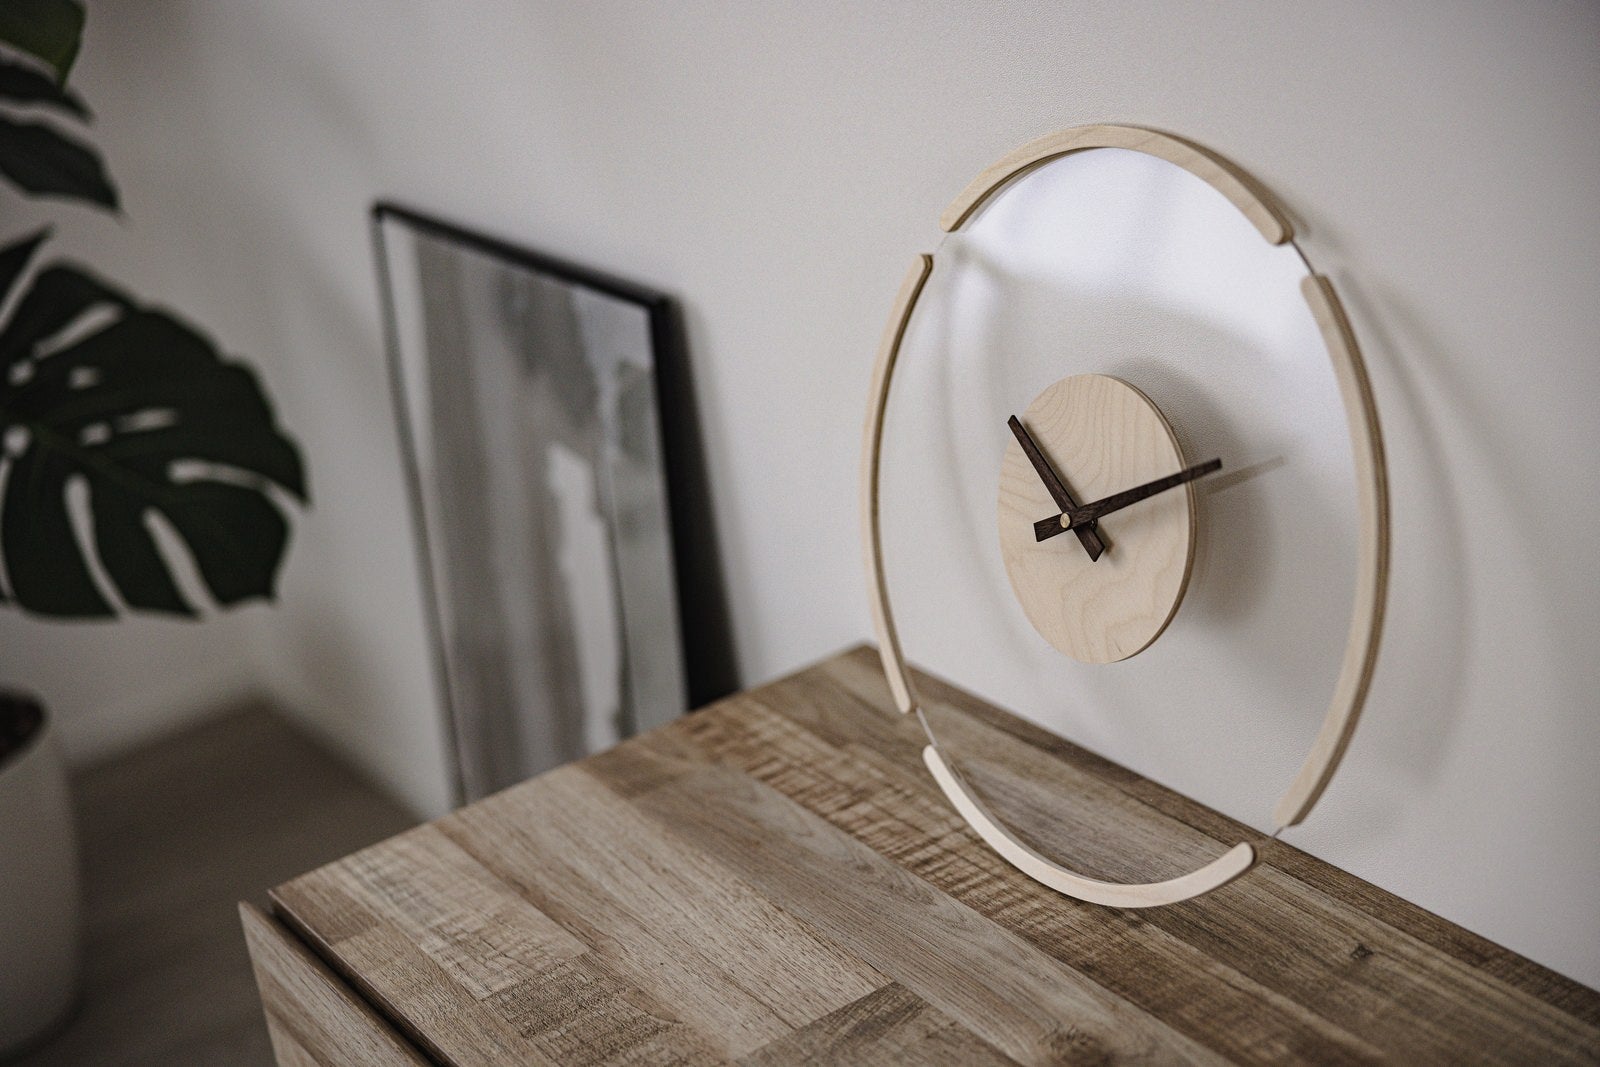 「部屋の台に置かれた透明な時計」の写真